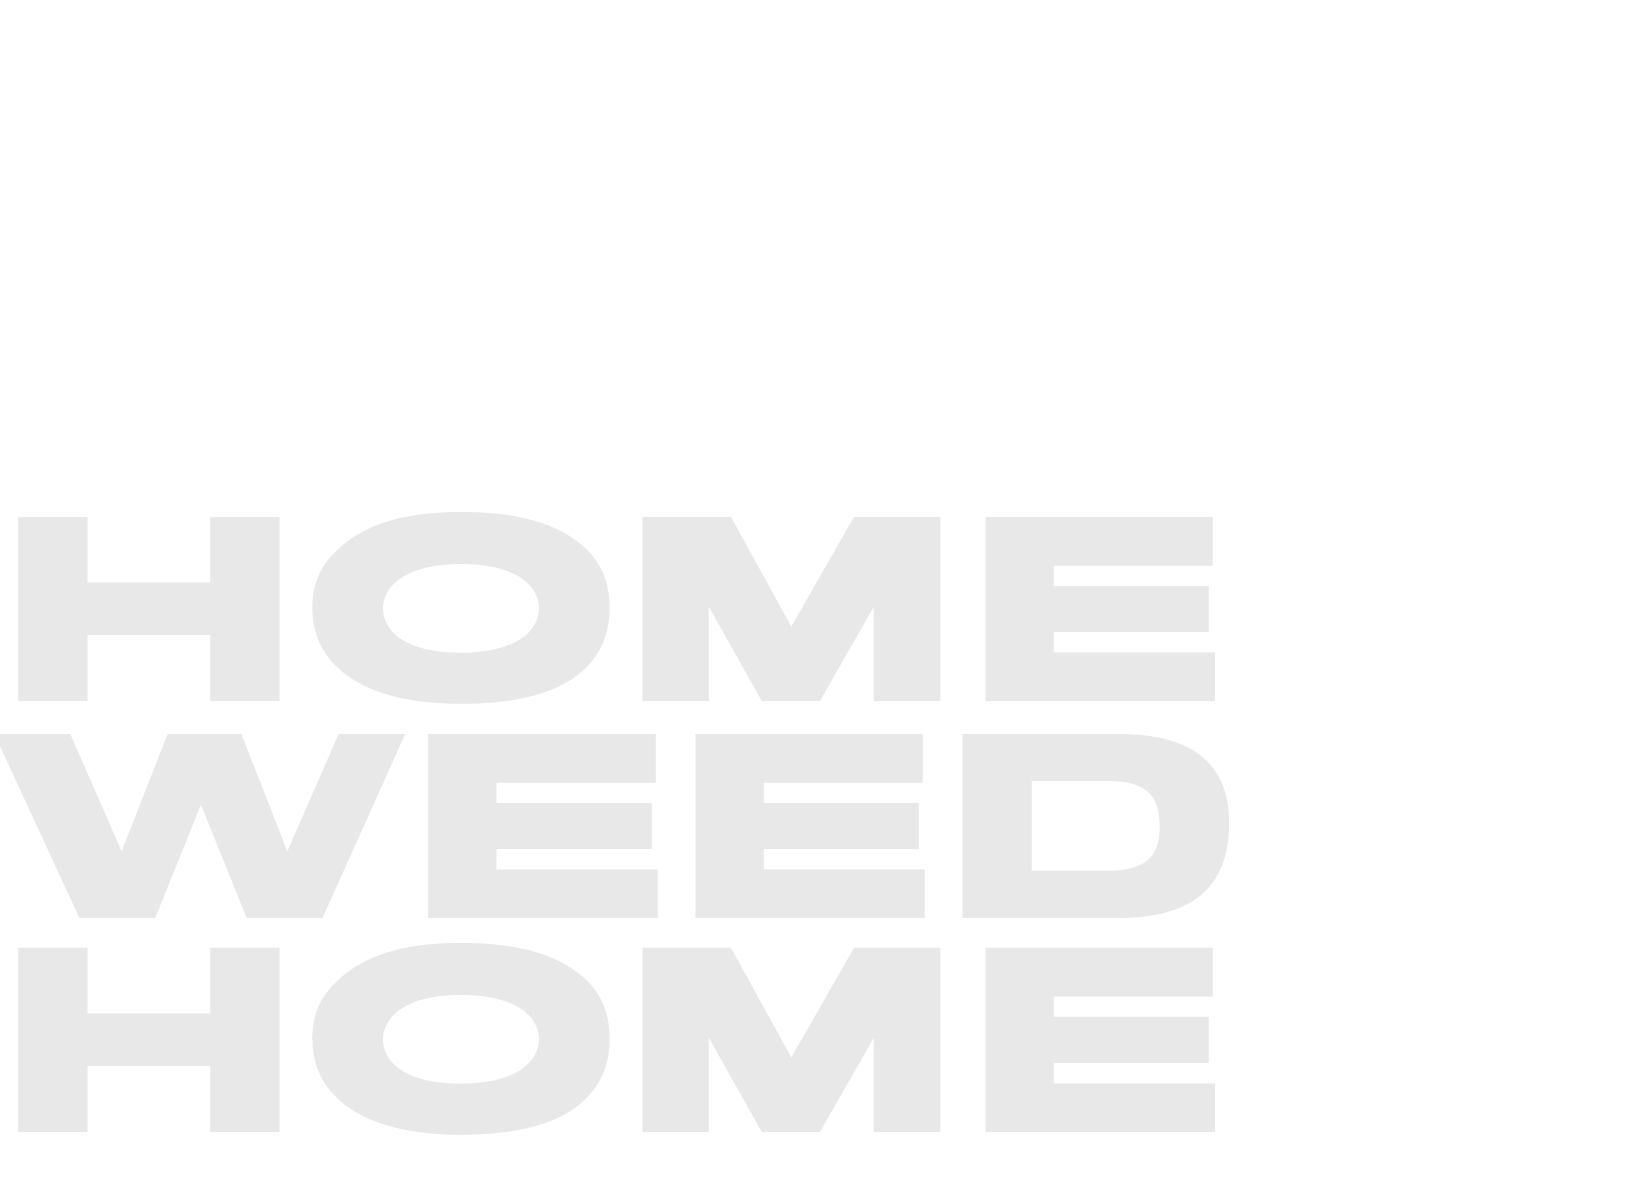 Logotipo Home weed Home en color gris claro